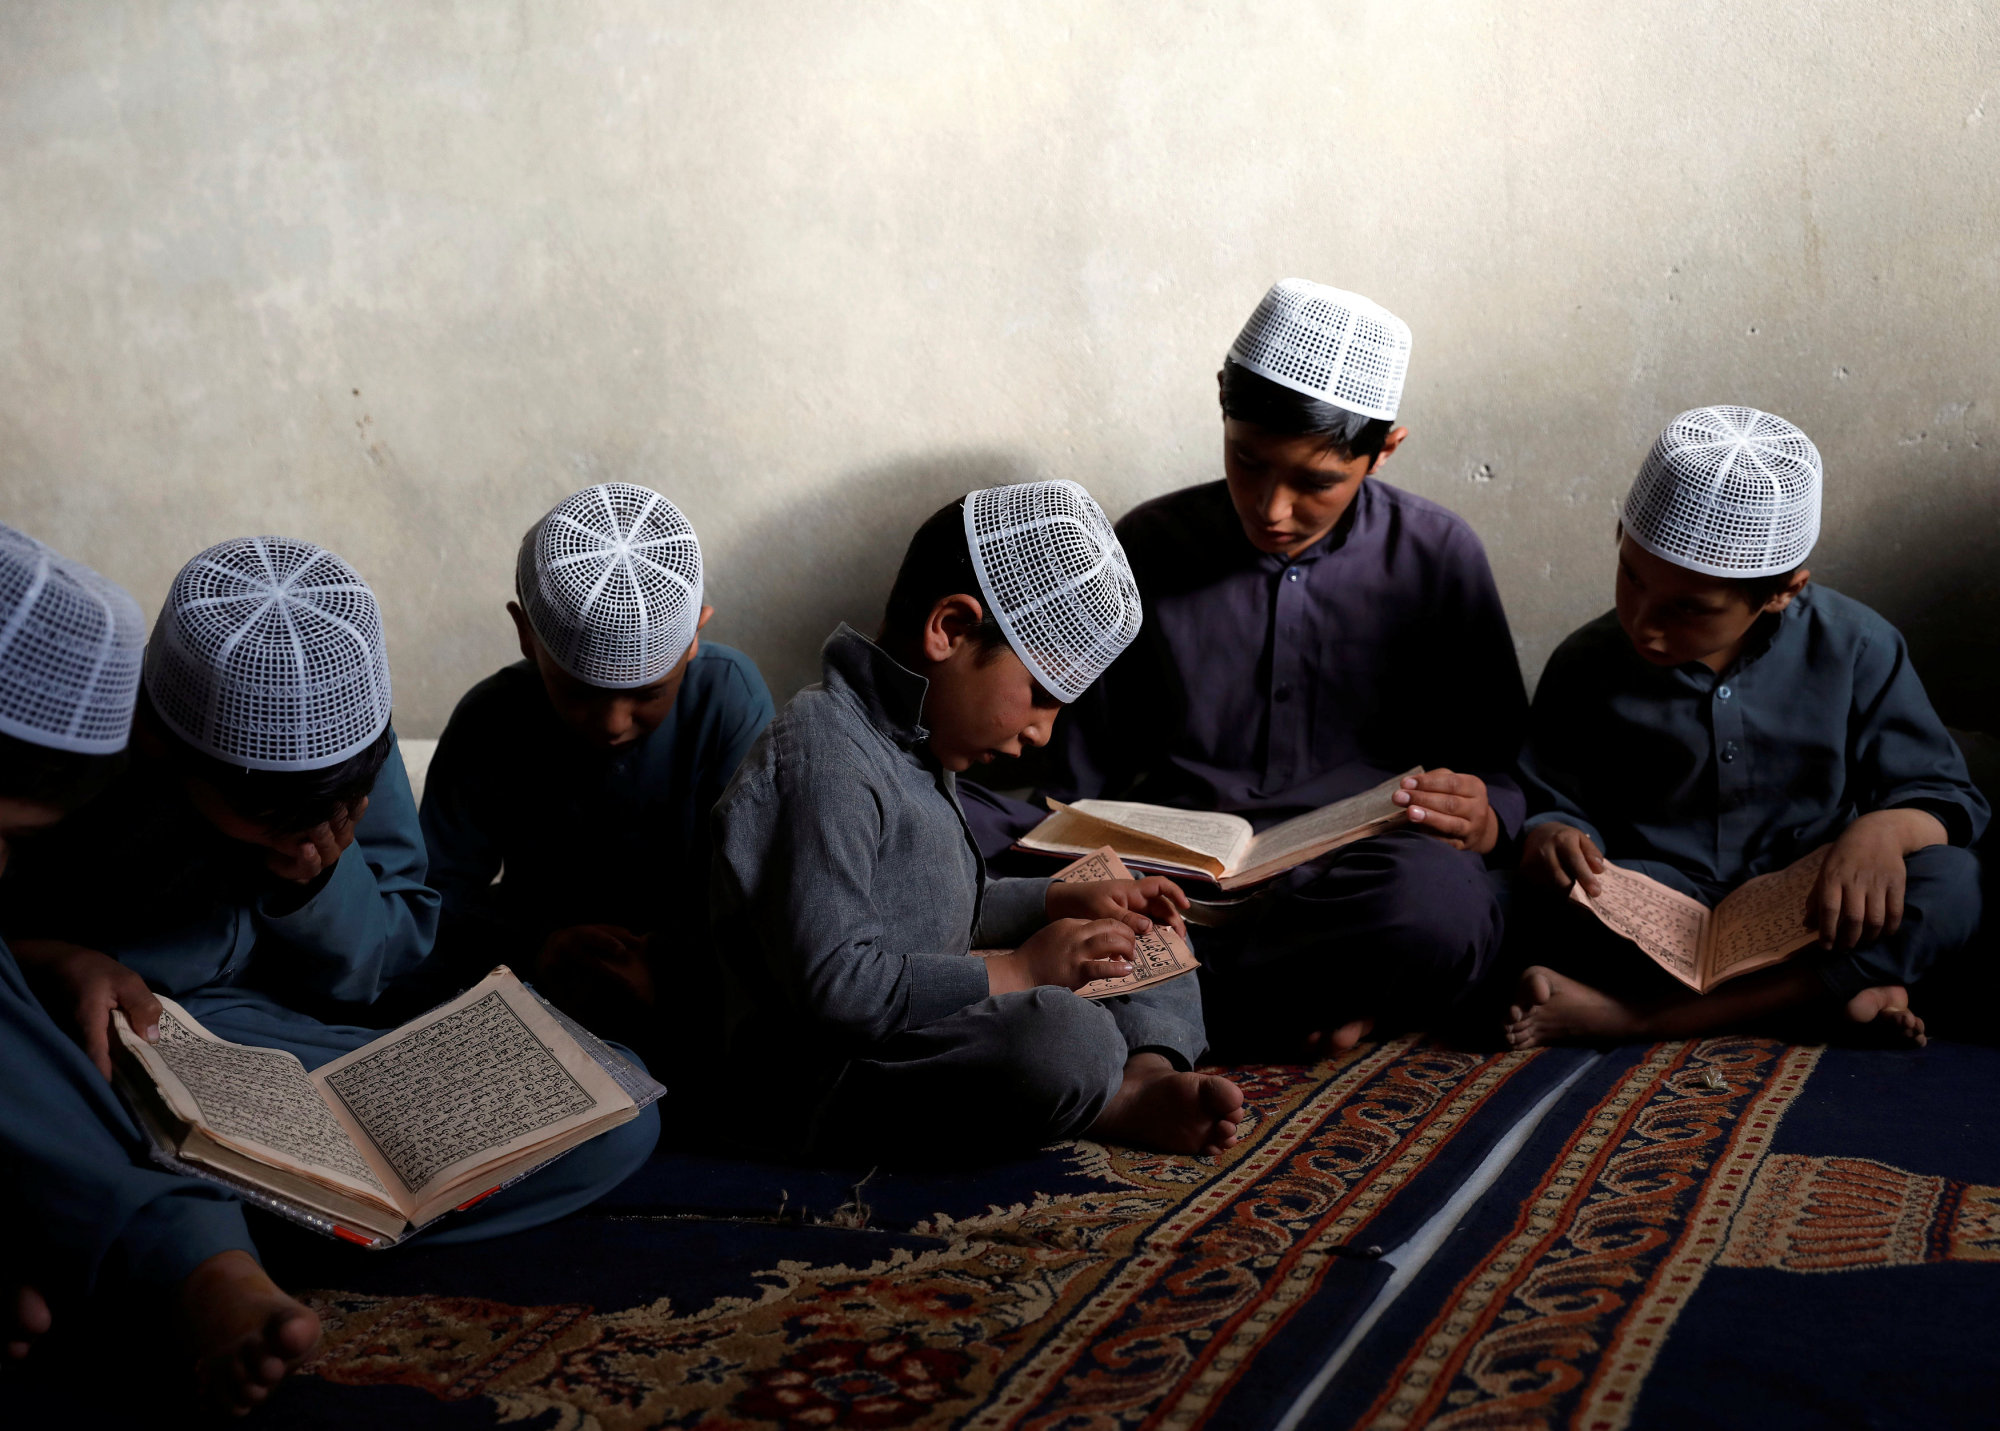 آموزش ریاضی با گلوله؛ مدارس افغانستان چطور تبدیل به ماشین تولید تروریسم طالبان شدند؟